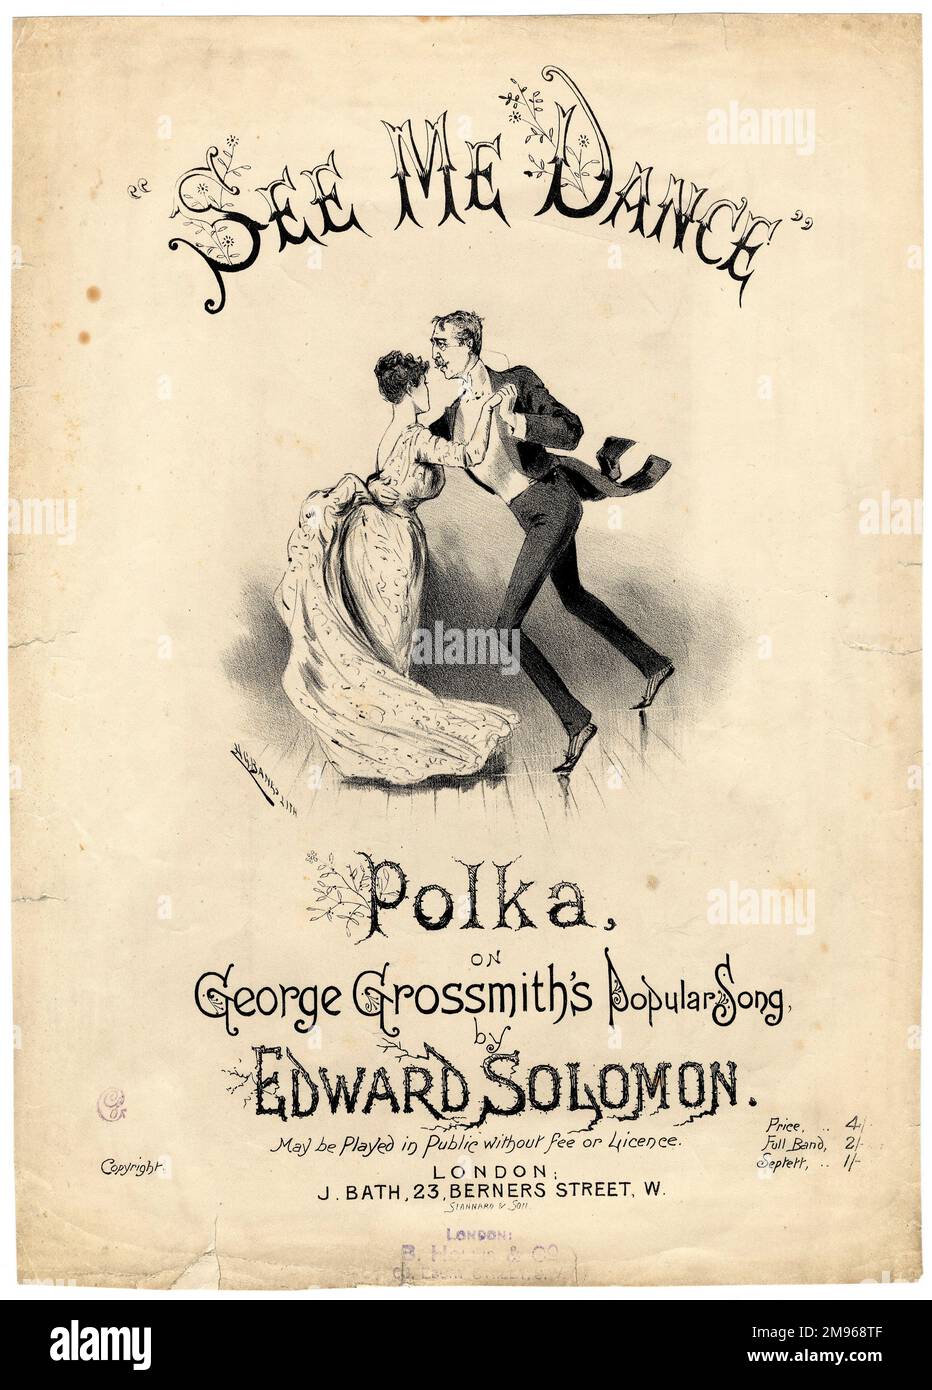 Couverture musicale de See Me Dance The Polka, basée sur la chanson populaire de George Grossmith, organisée par Edward Solomon (1855-1895). George Grossmith (1847-1912) était un comédien, écrivain, compositeur, acteur et chanteur anglais. Il était célèbre pour avoir exécuté ses propres croquis et chansons de piano comique, y compris celui-ci, qu'il a écrit en 1886, et qui est encore connu aujourd'hui. Un couple est représenté dansant la polka -- l'homme ressemble beaucoup à Grossmith lui-même. Banque D'Images